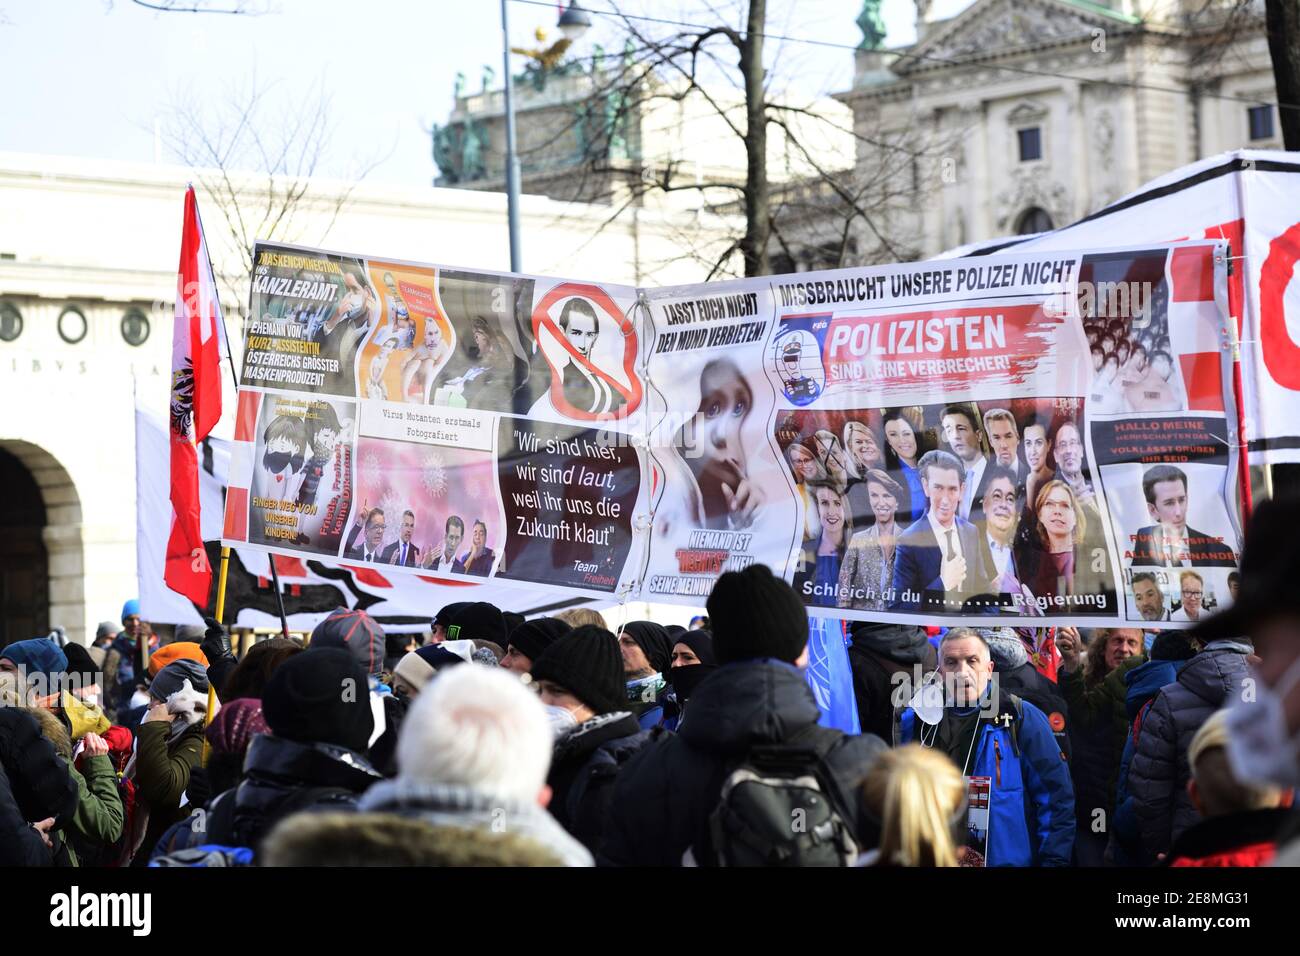 31 janvier 2021. Vienne, Autriche. Une manifestation anti corona non enregistrée avec plusieurs milliers de personnes a été encerclée et décomposée par la police. Banque D'Images